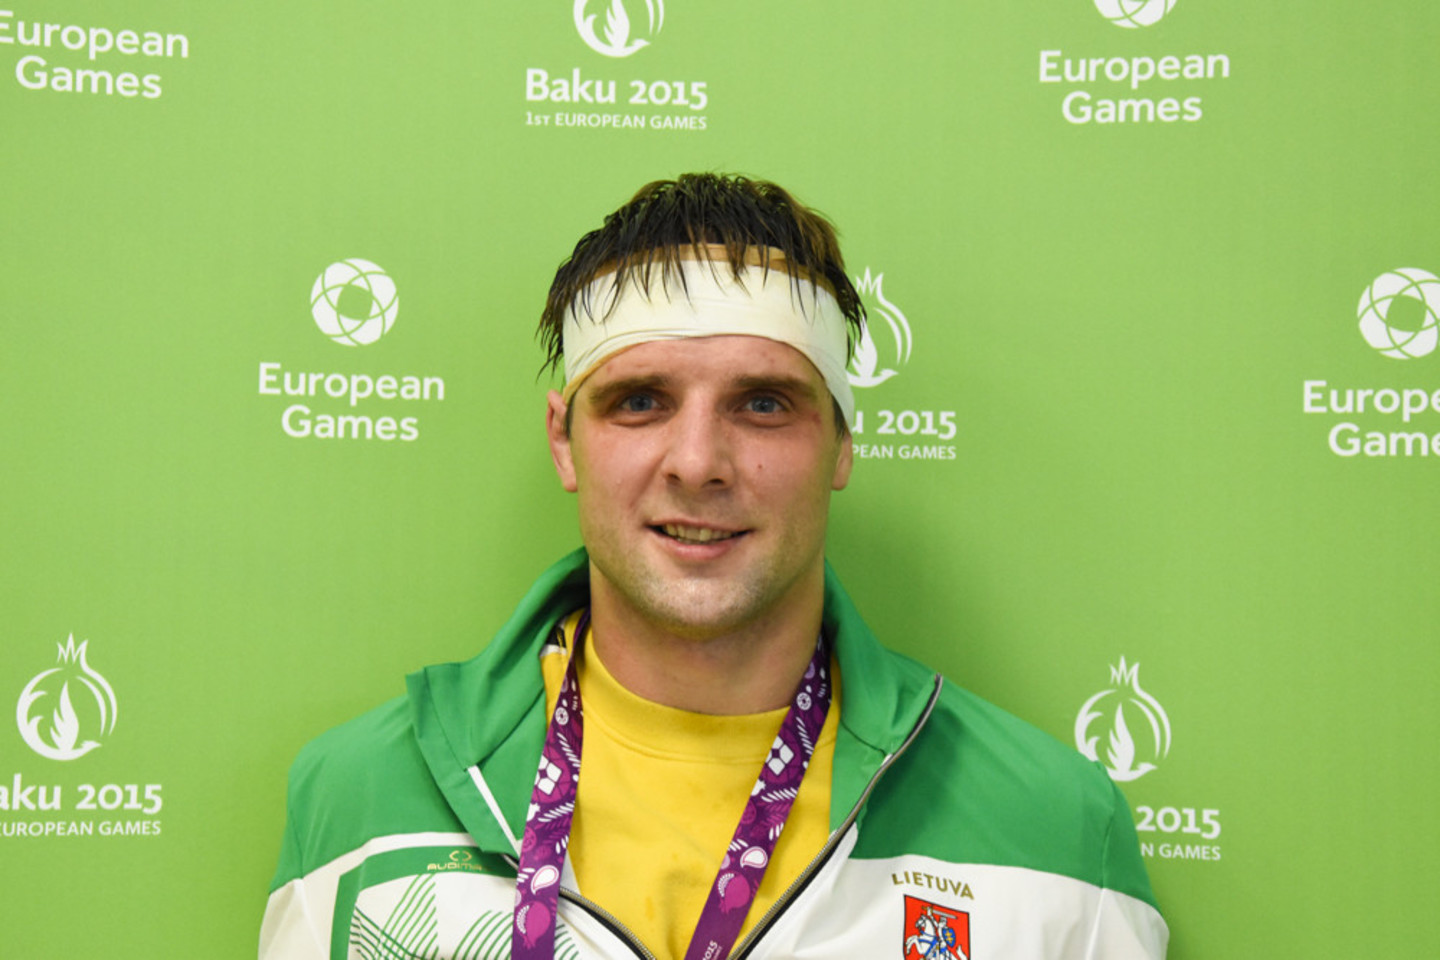 R.Matukas Europos žaidynėse Baku sambo varžybose pralaimėjo ketvirtfinalyje Baltarusijos atletui A.Kaziusonakui, bet kovos dėl bronzos medalio.<br>G.Smilingytės nuotr.